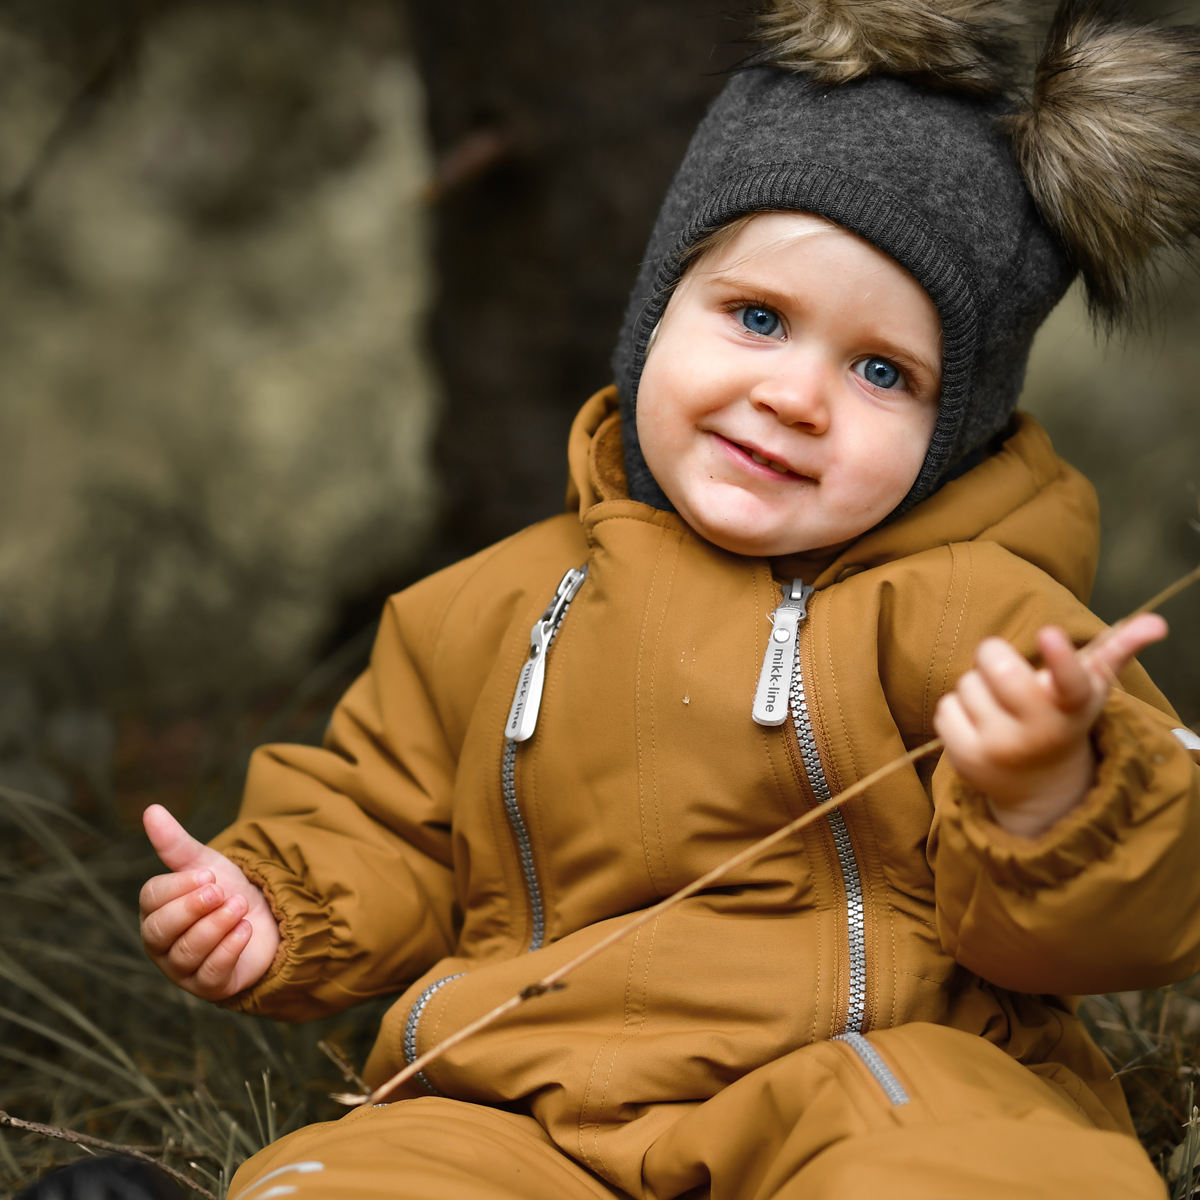 Mikk-Line Snow Suit Baby, Golden Brown Lasteriided - HellyK - Kvaliteetsed lasteriided, villariided, barefoot jalatsid